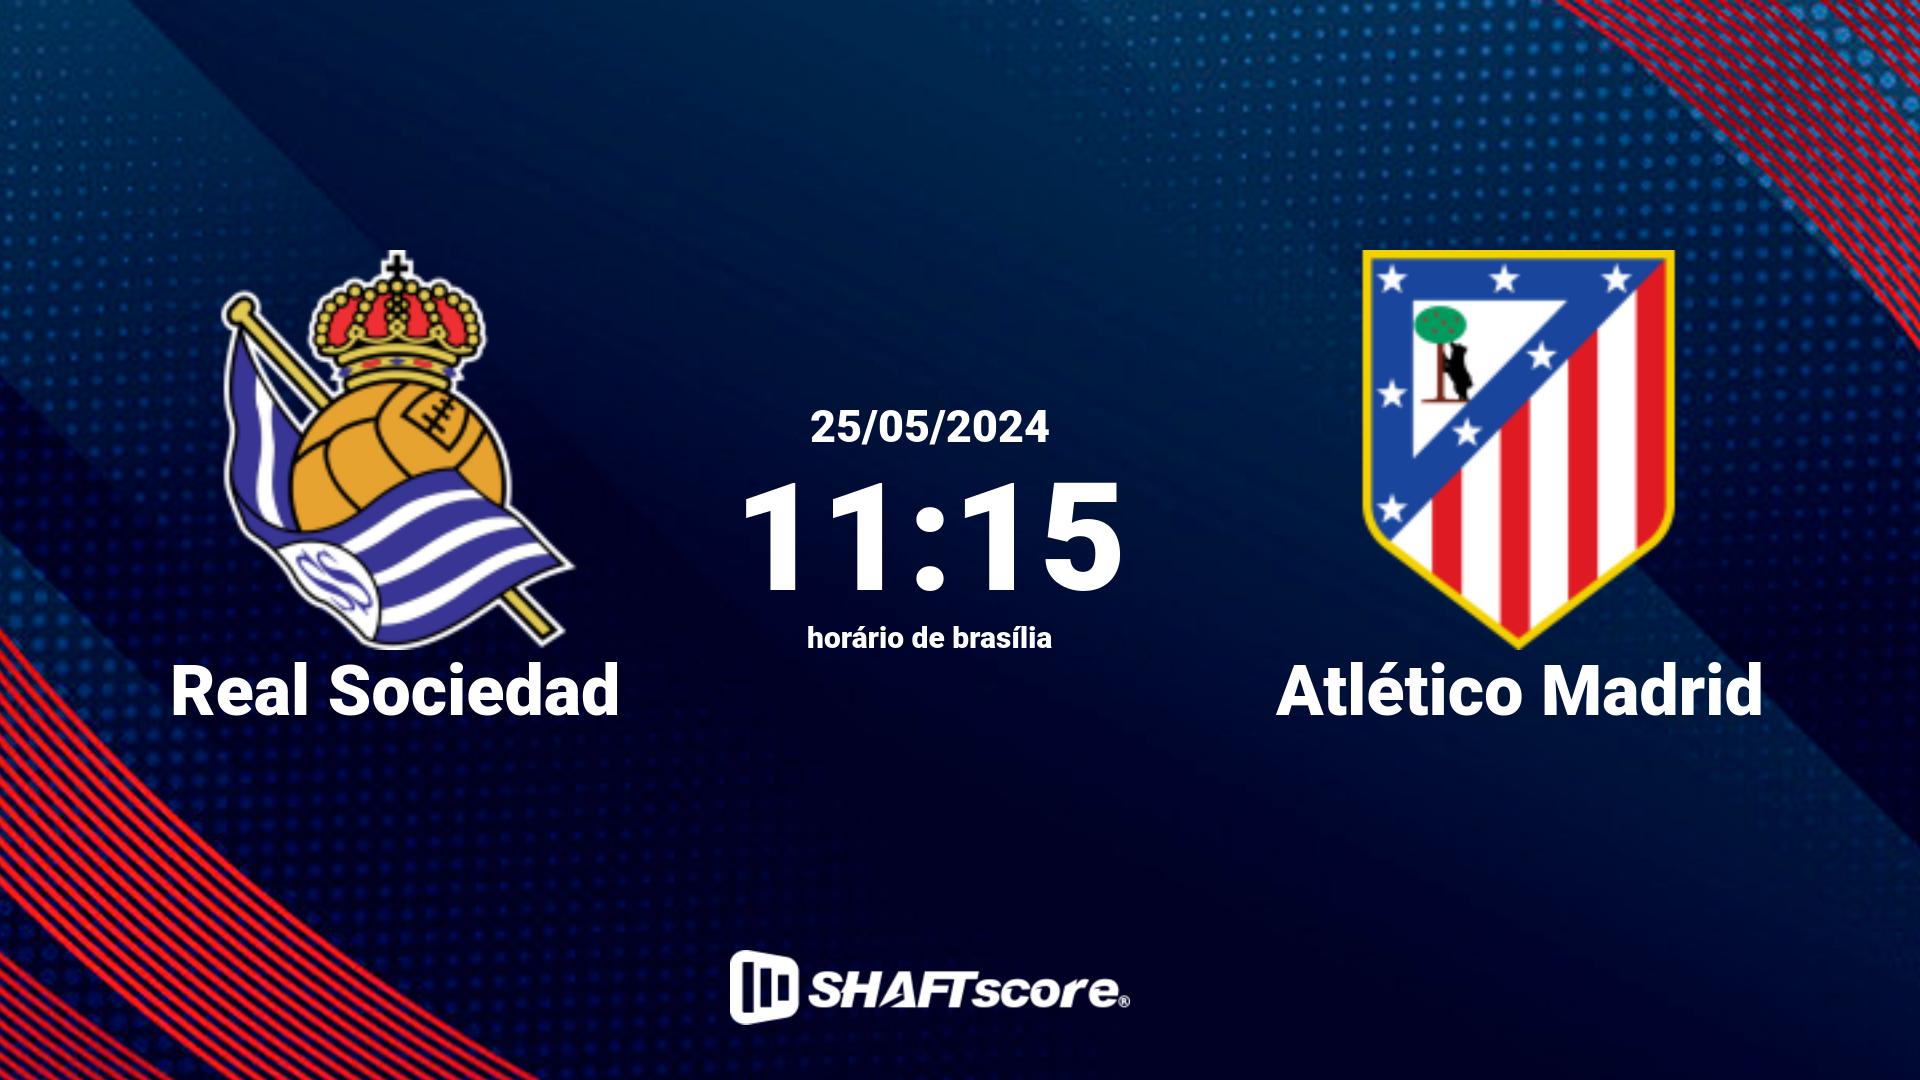 Estatísticas do jogo Real Sociedad vs Atlético Madrid 25.05 11:15